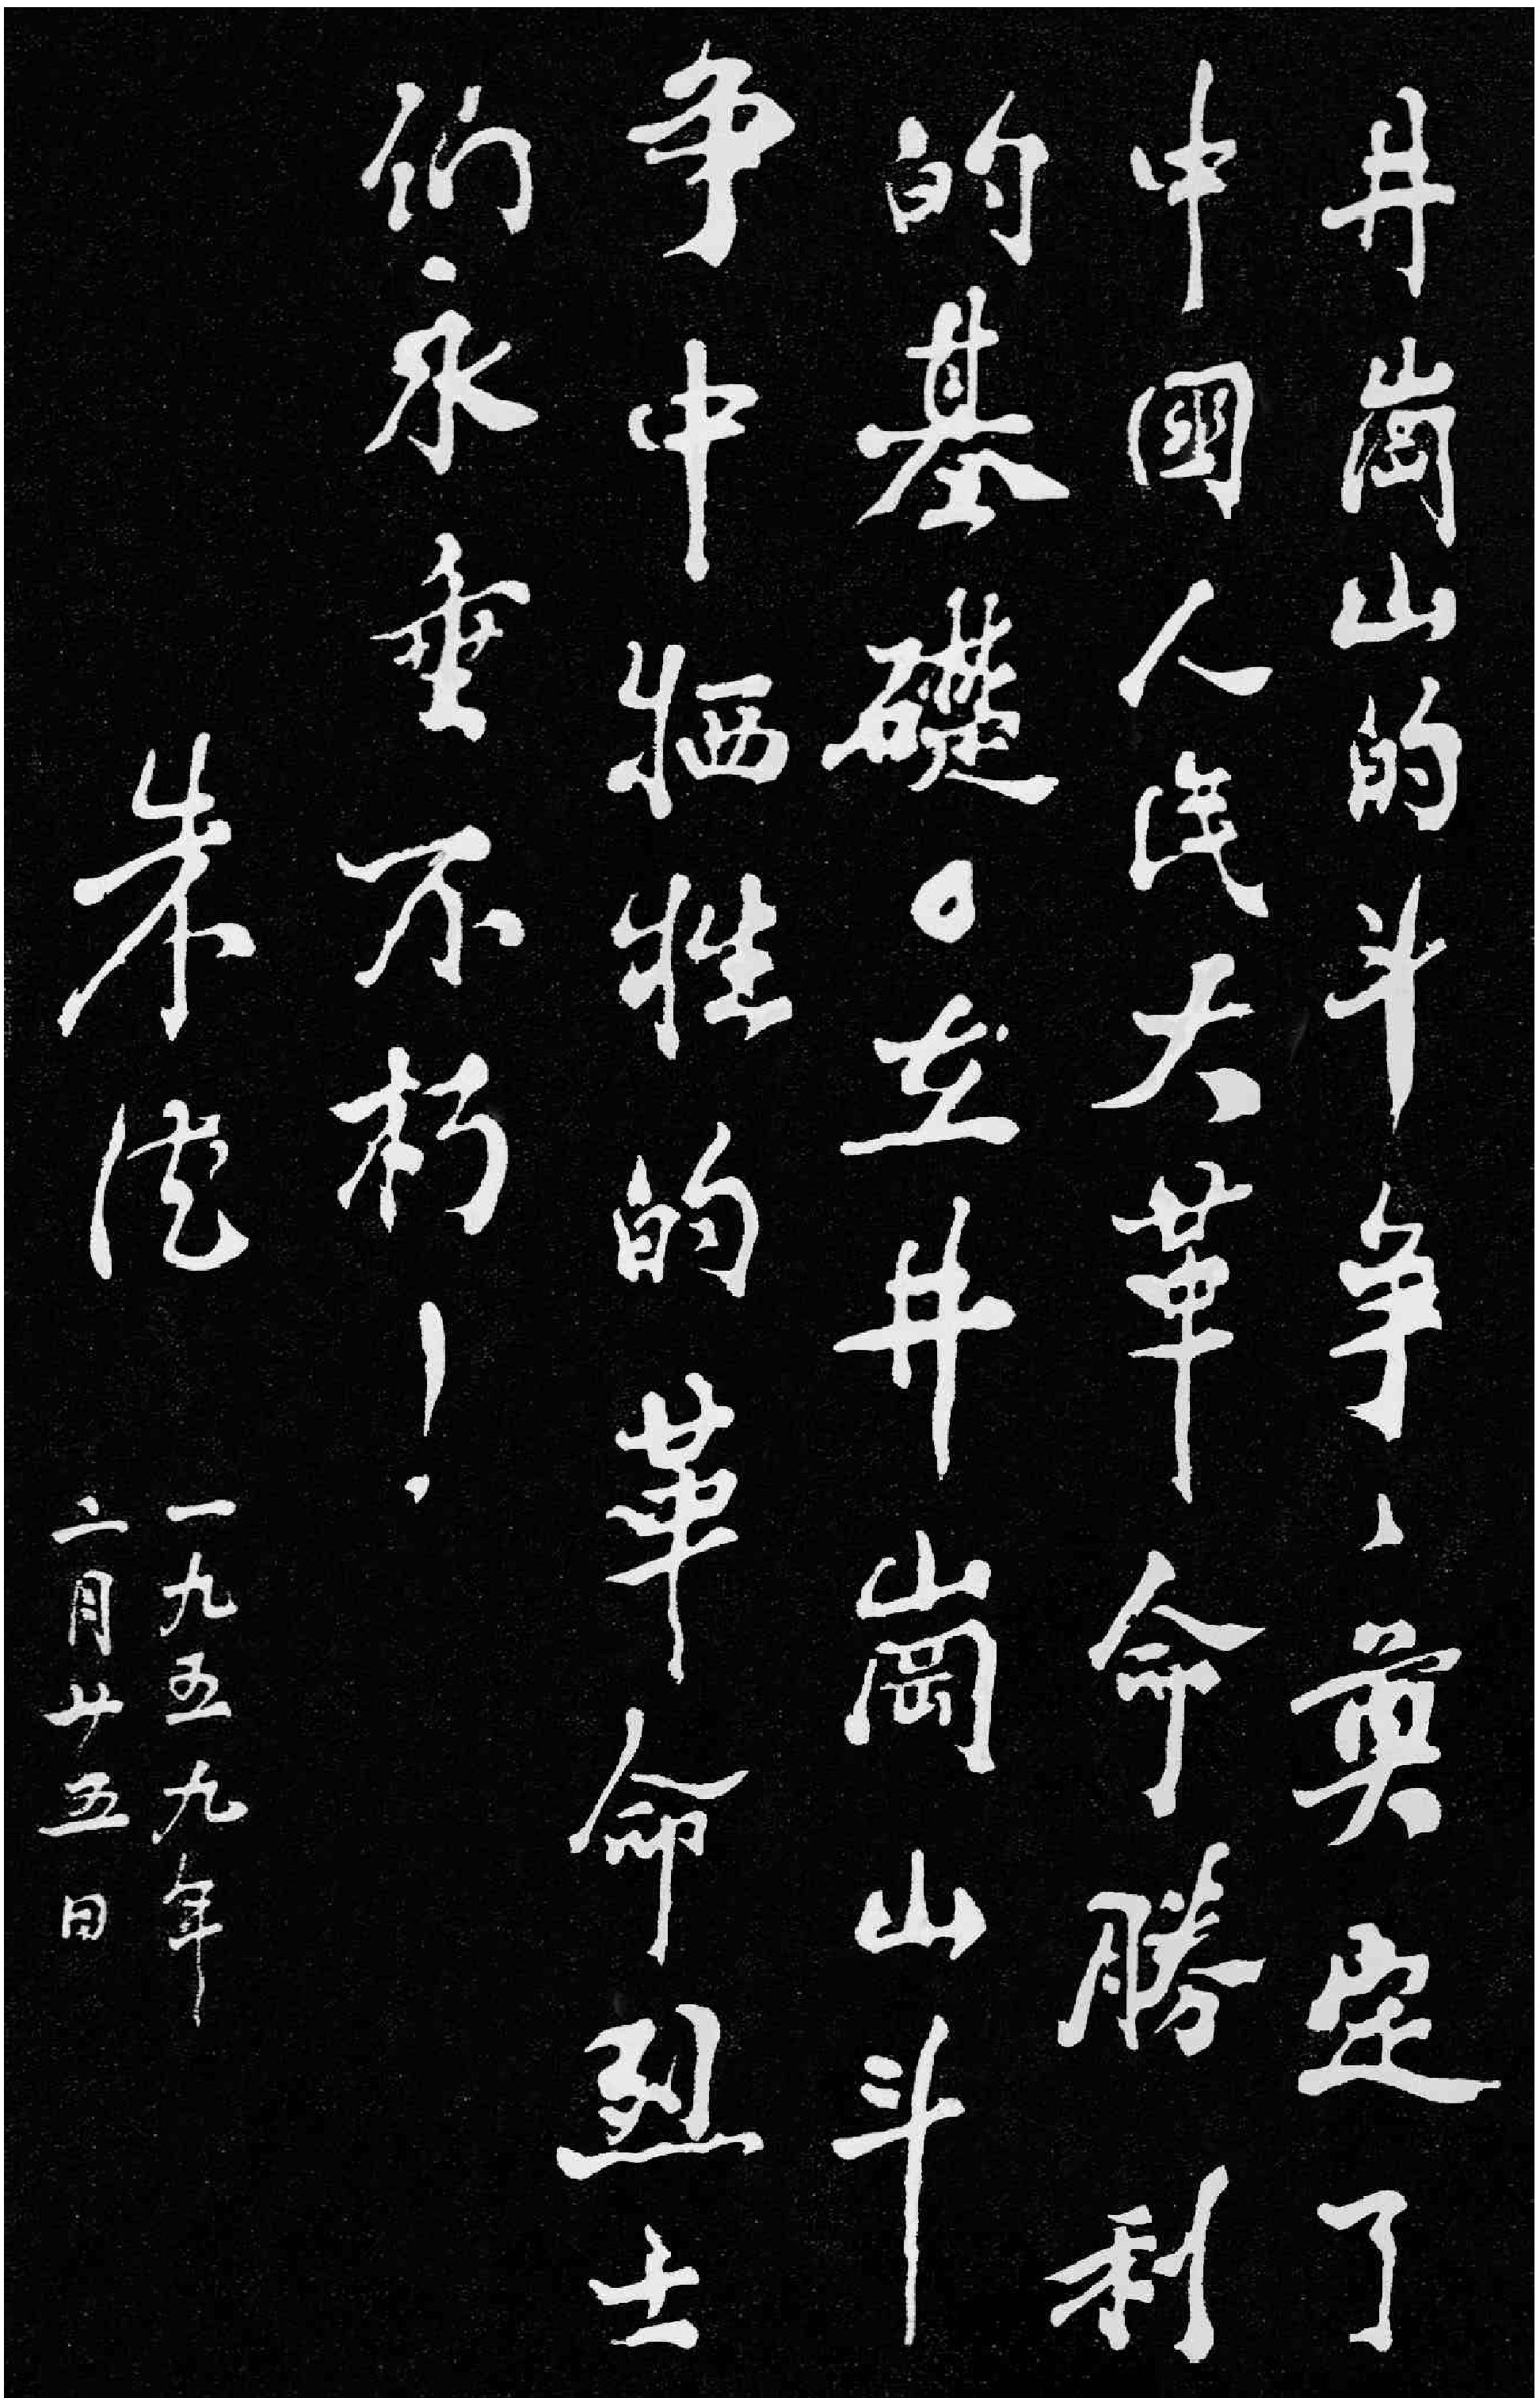 井冈山的斗争，奠定了中国人民大革命胜利的基础。在井冈山斗争中牺牲的革命烈士们永垂不朽!